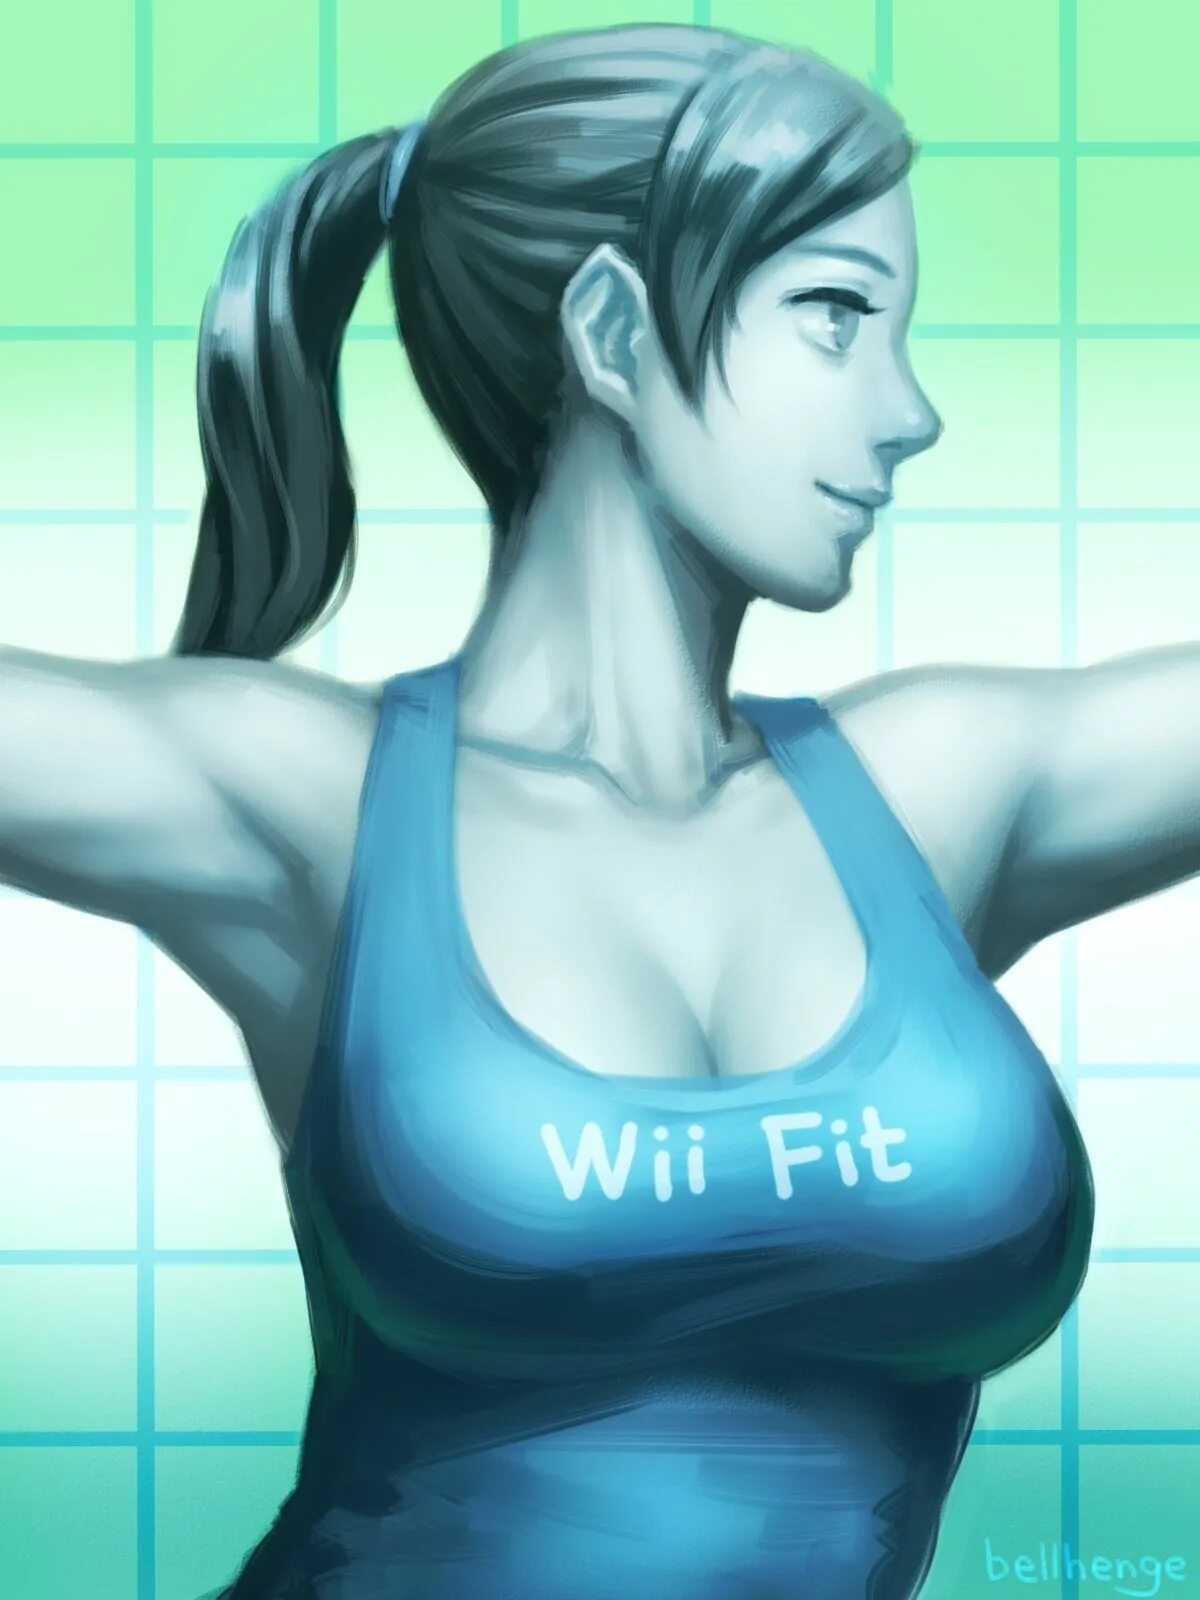 Wii fit. Wii Fit Trainer. Wii Fit Trainer Art. Fat Wii Fit Trainer. Nintendo Wii Fit Trainer.